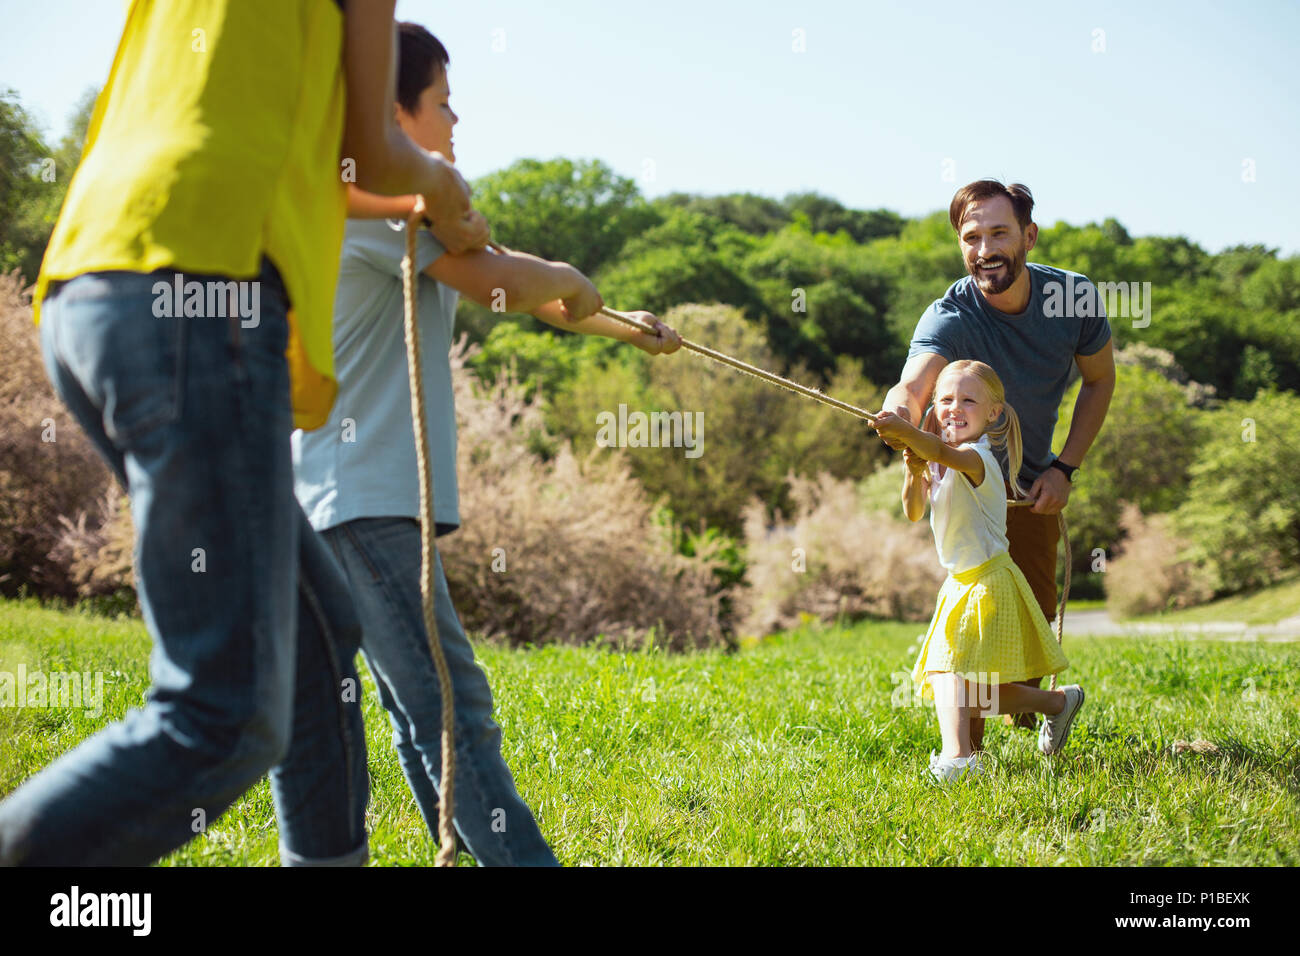 La famille heureux de jouer à un jeu dans le parc Banque D'Images